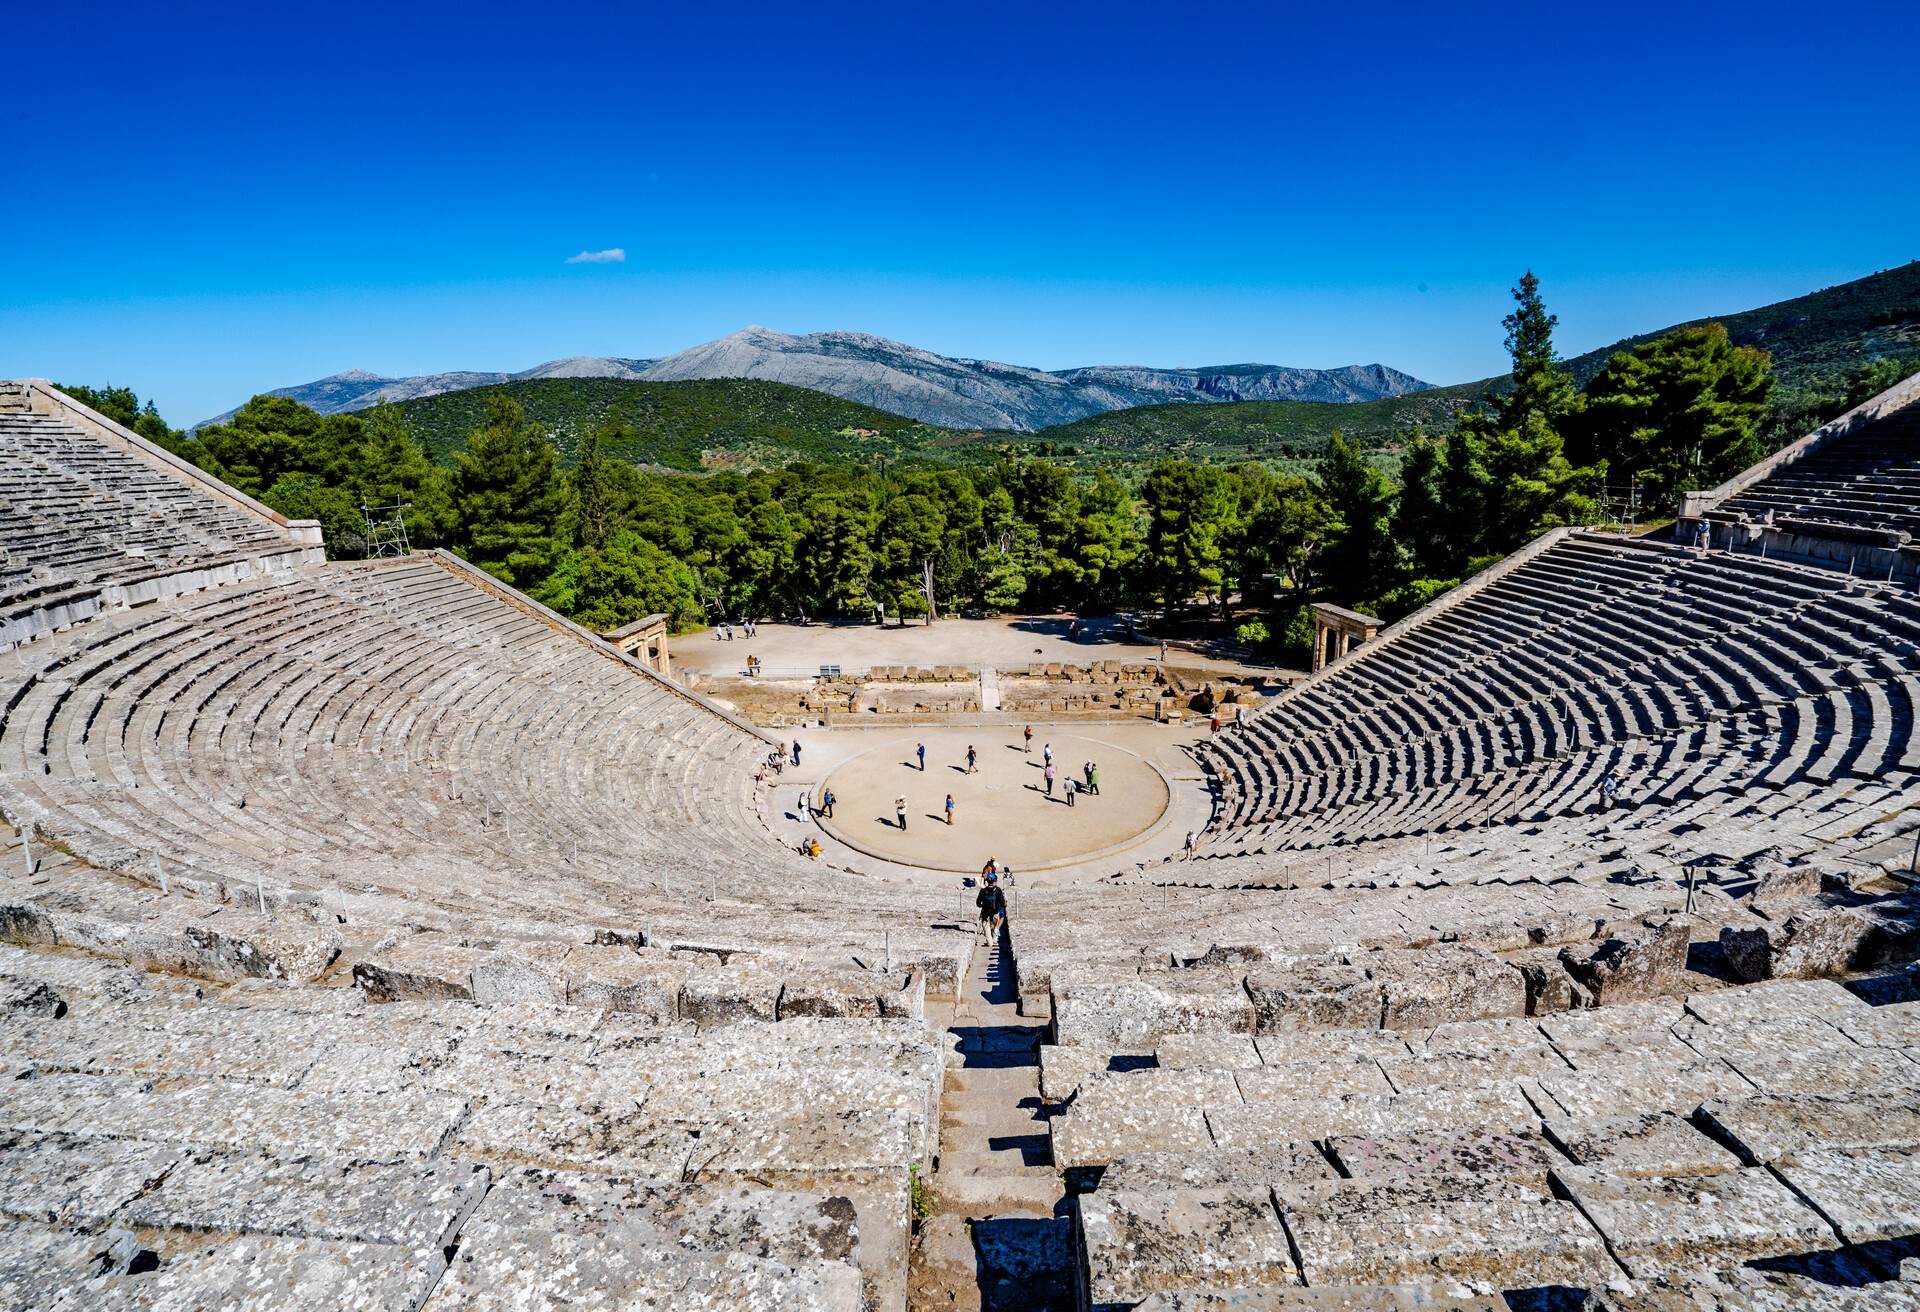 DEST_GREECE_LYGOURIO_Theater-of-Epidaurus_GettyImages-1154481062.jpg